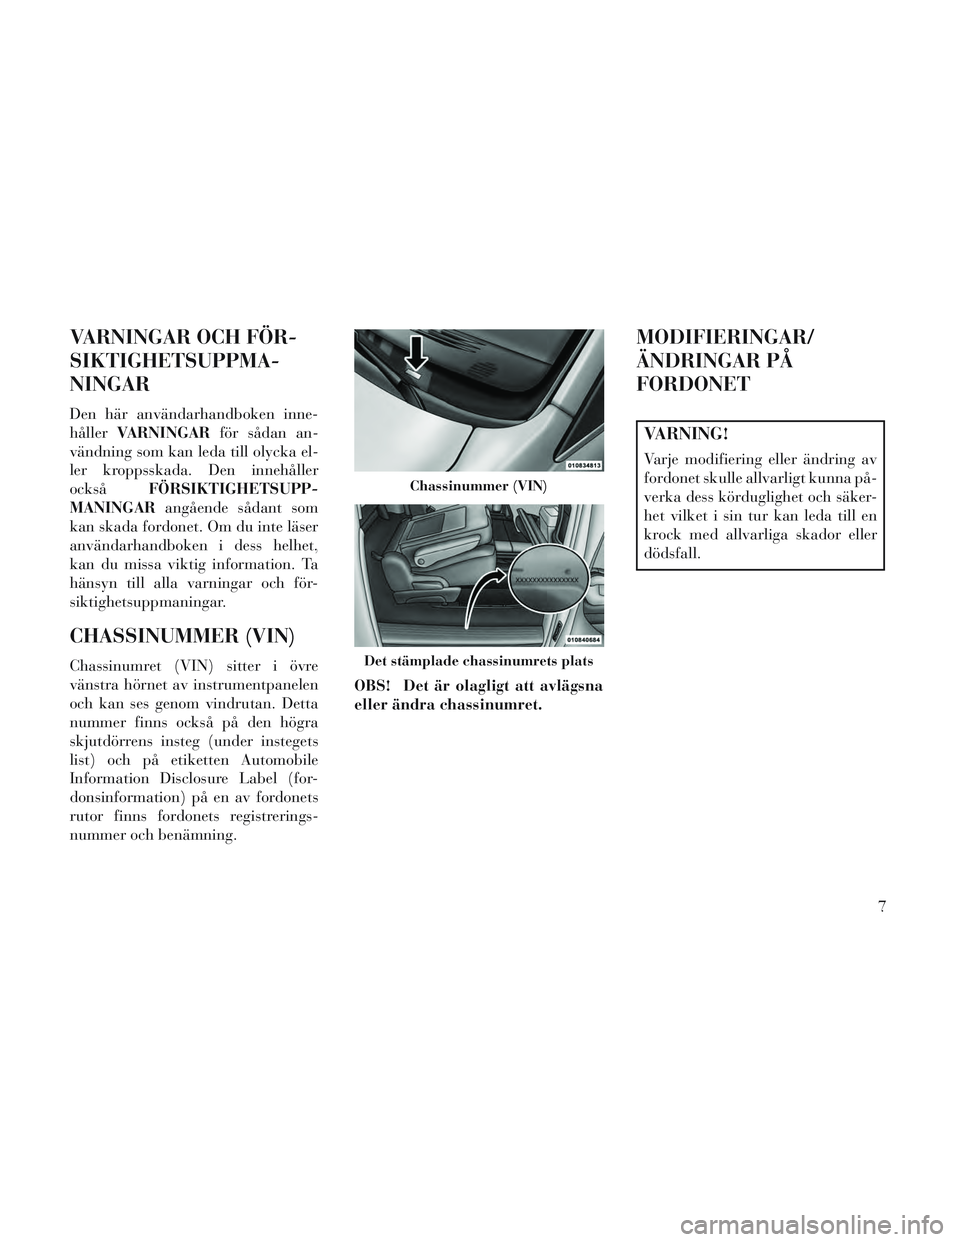 Lancia Voyager 2014  Drift- och underhållshandbok (in Swedish) VARNINGAR OCH FÖR-
SIKTIGHETSUPPMA-
NINGAR
Den här användarhandboken inne-
hållerVARNINGAR för sådan an-
vändning som kan leda till olycka el-
ler kroppsskada. Den innehåller
också FÖRSIKTIG